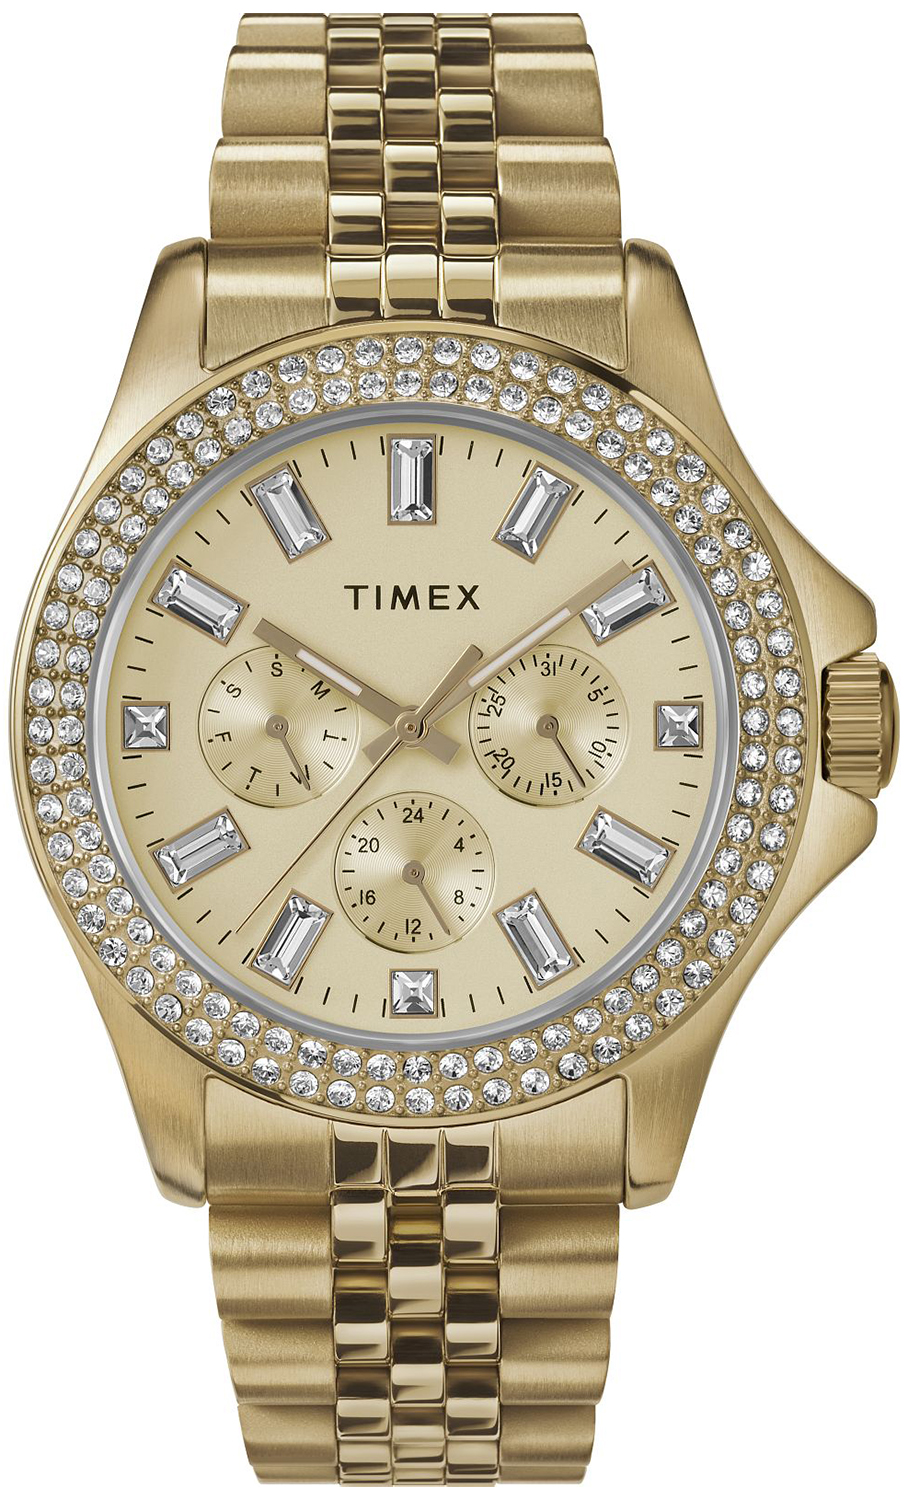 Zegarek Timex TW2V79400 Trend Kaia - Natychmiastowa WYSYŁKA 0zł (DHL DPD INPOST) | Grawer 1zł | Zwrot 100 dni